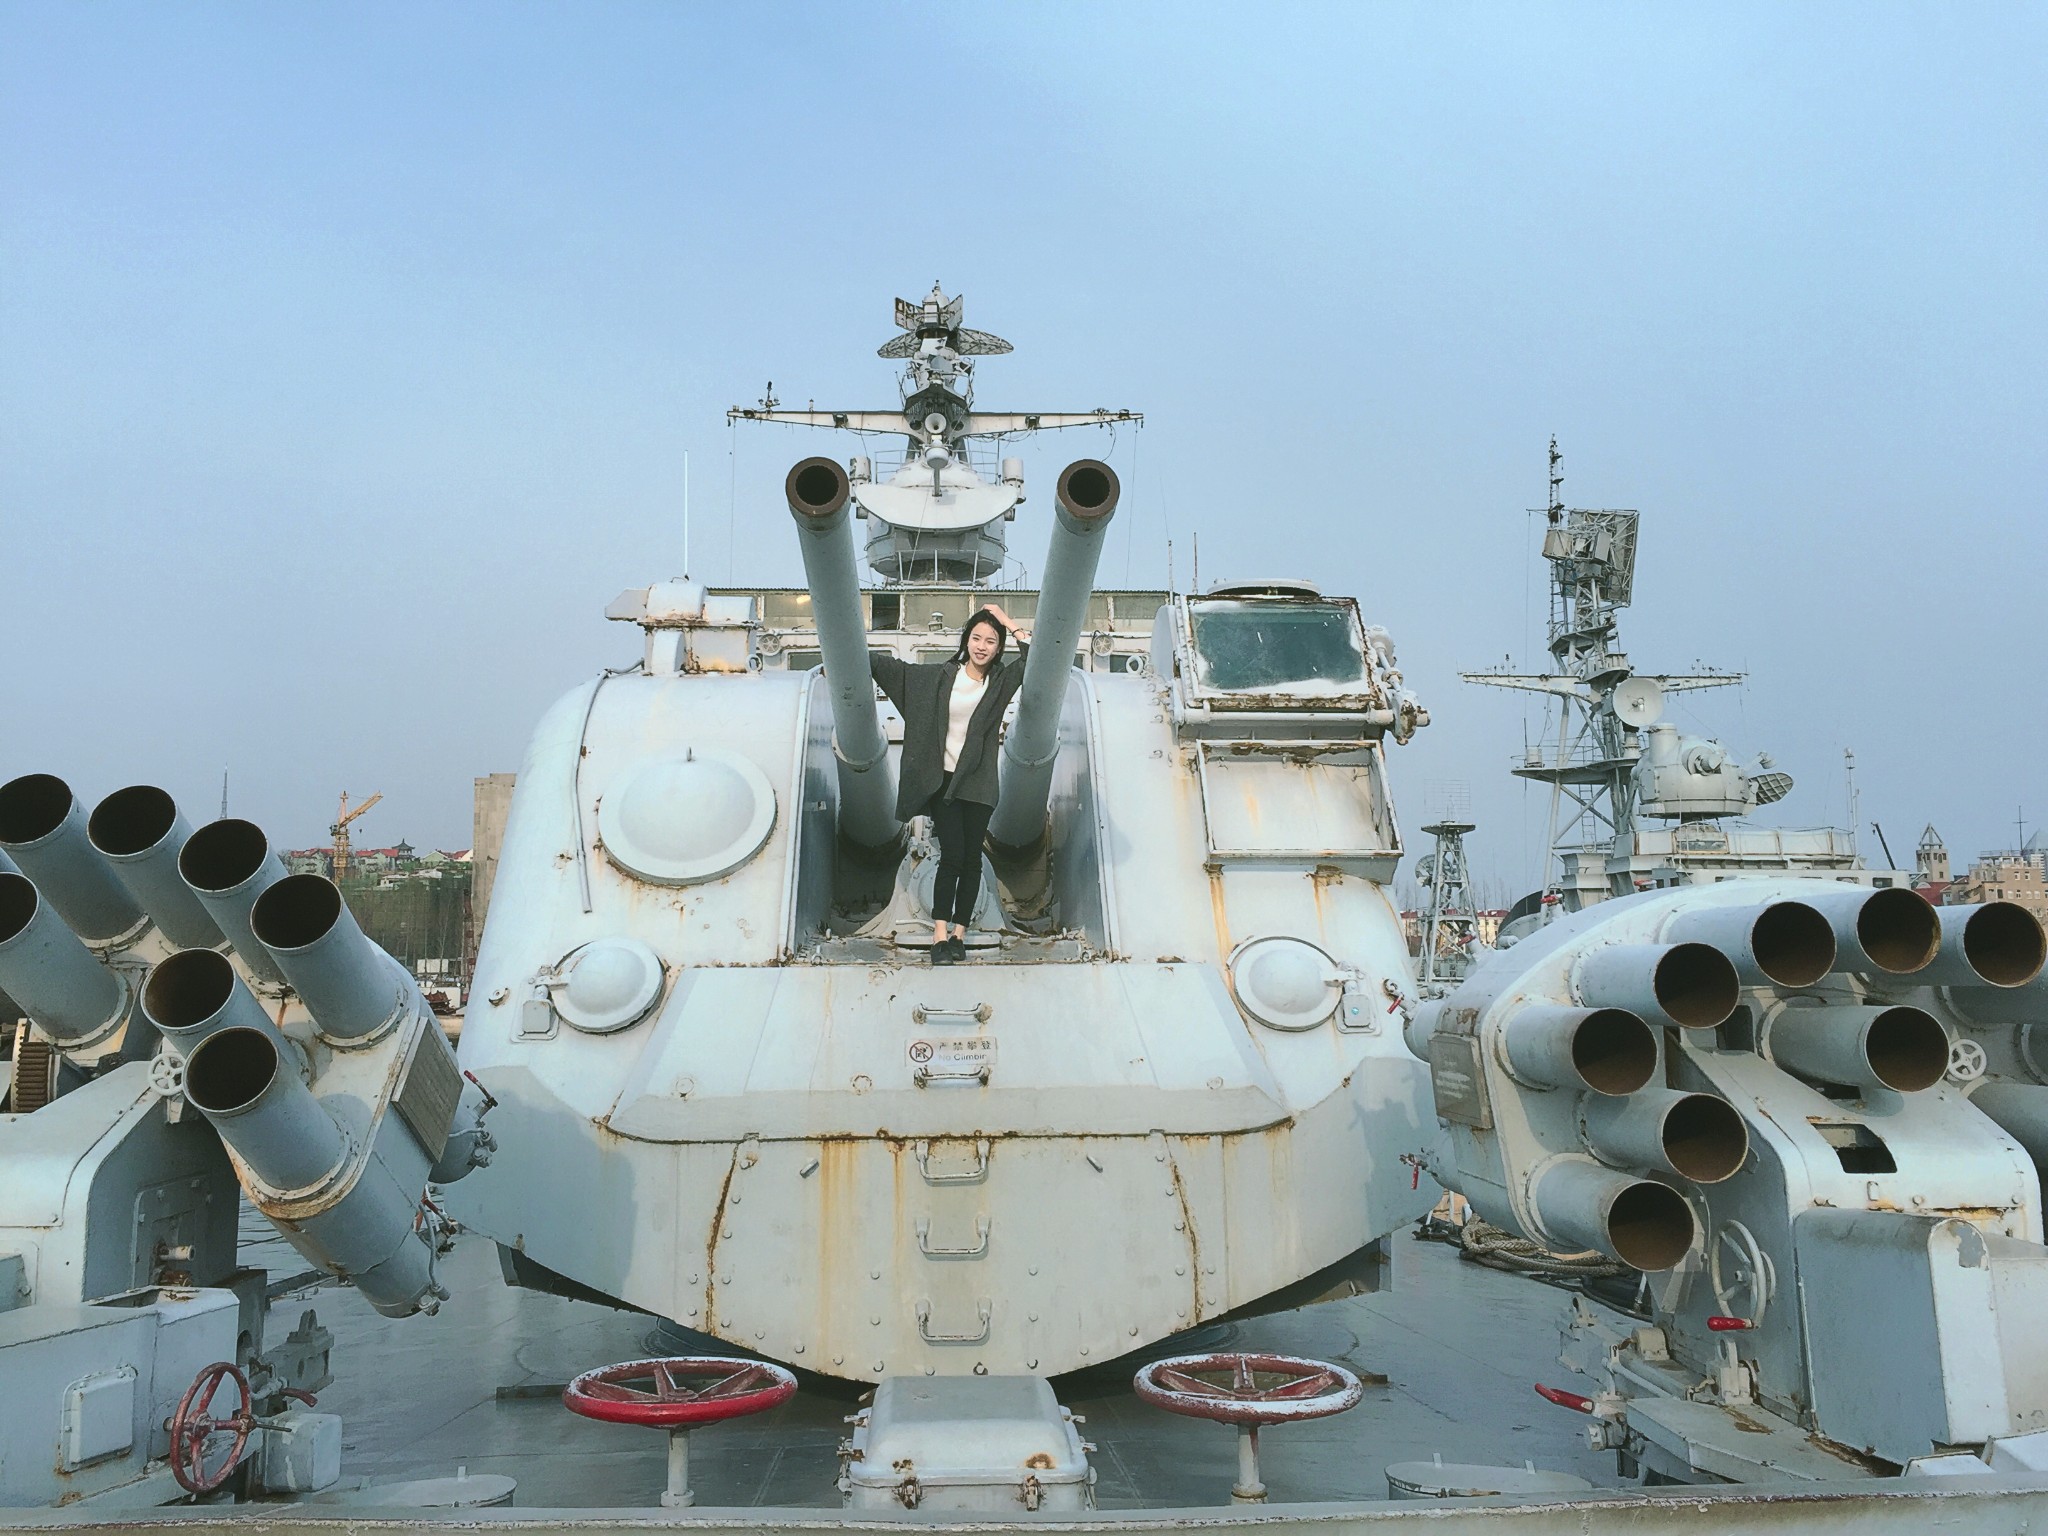 博物馆由海军创建,是中国唯一一座全面反映中国海军发展的军事博物馆